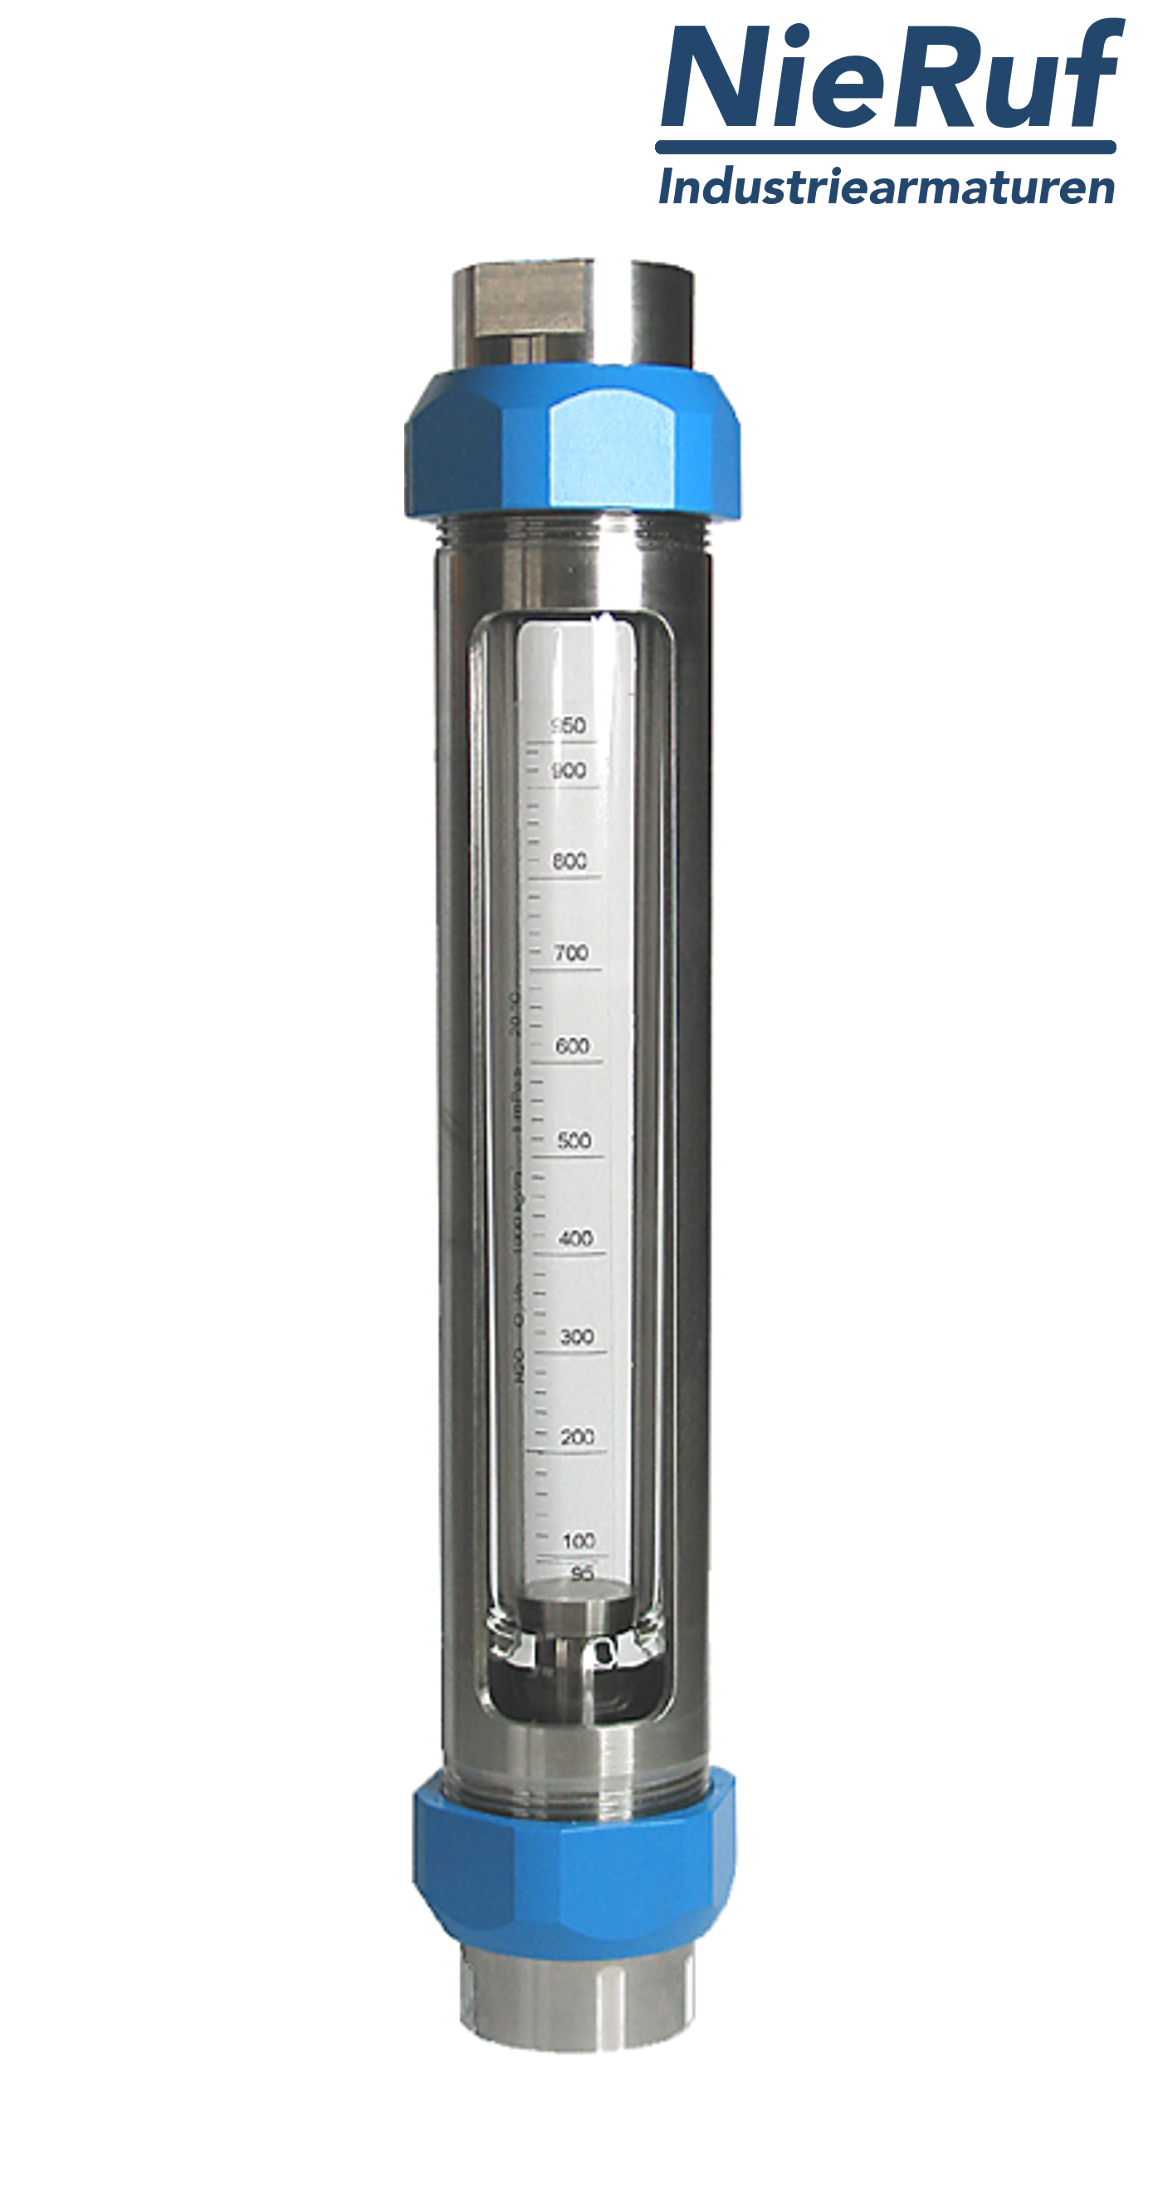 débitmètre à flotteur en acier inoxydable 3/4" pouce 65,0 - 650 l/h eau FKM